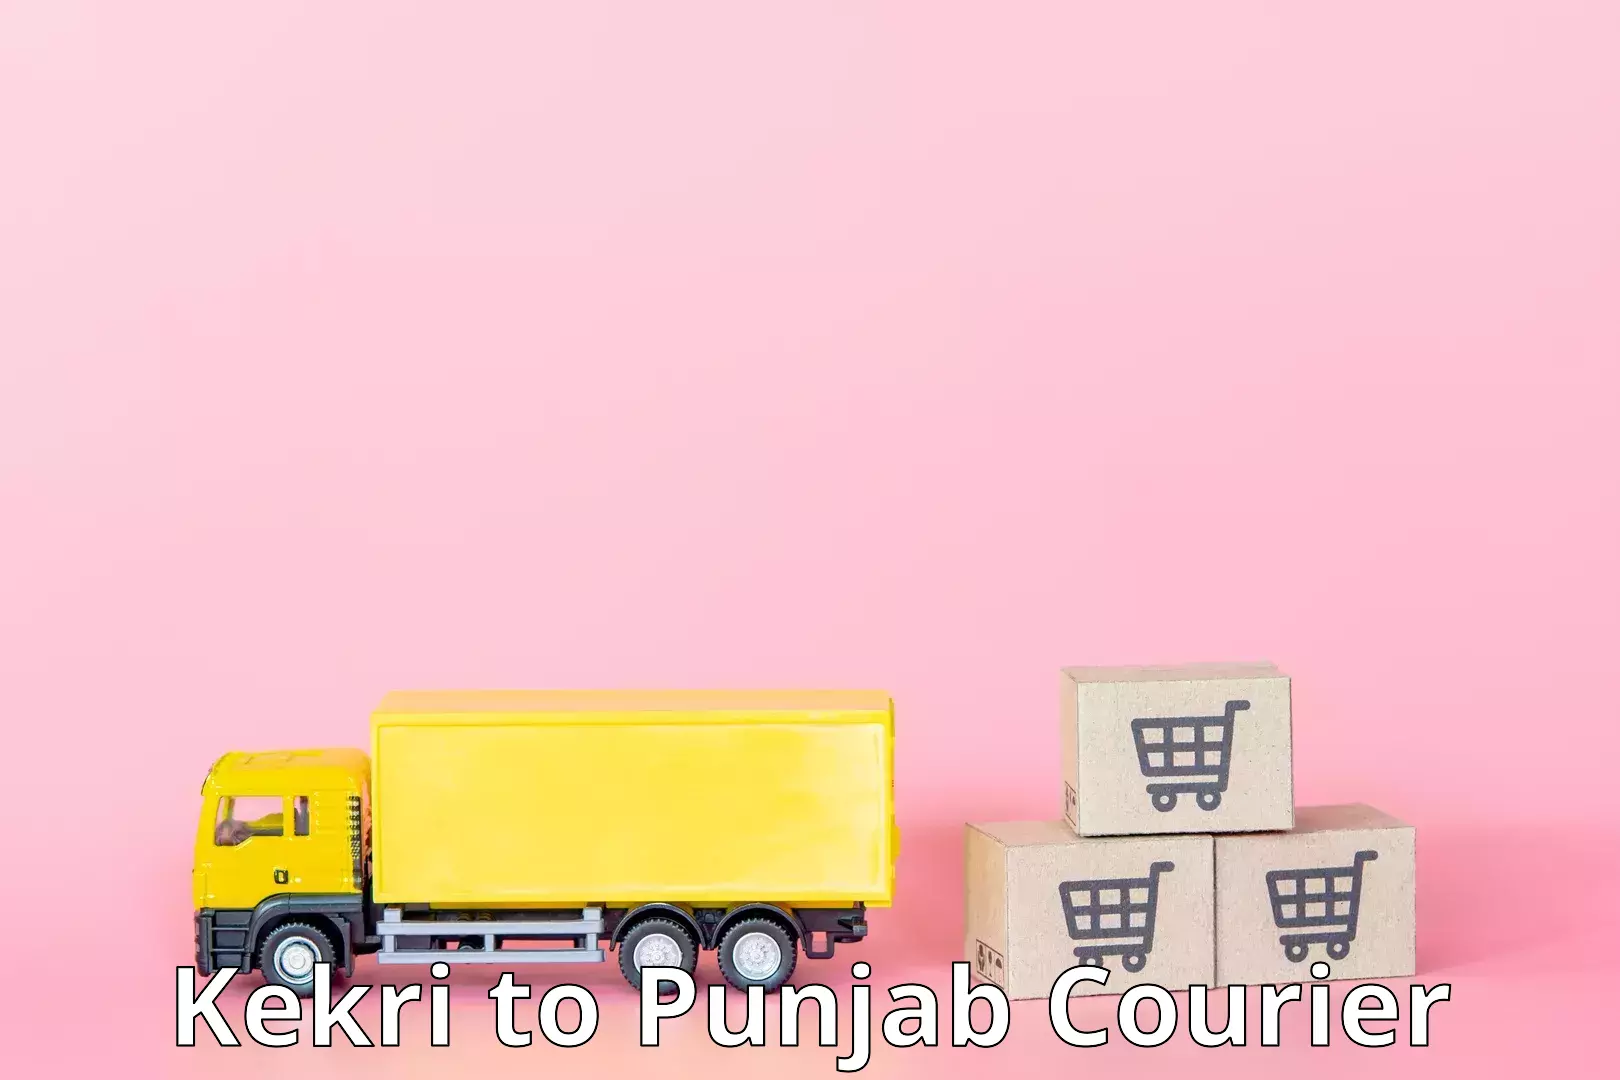 Express package transport Kekri to Punjab